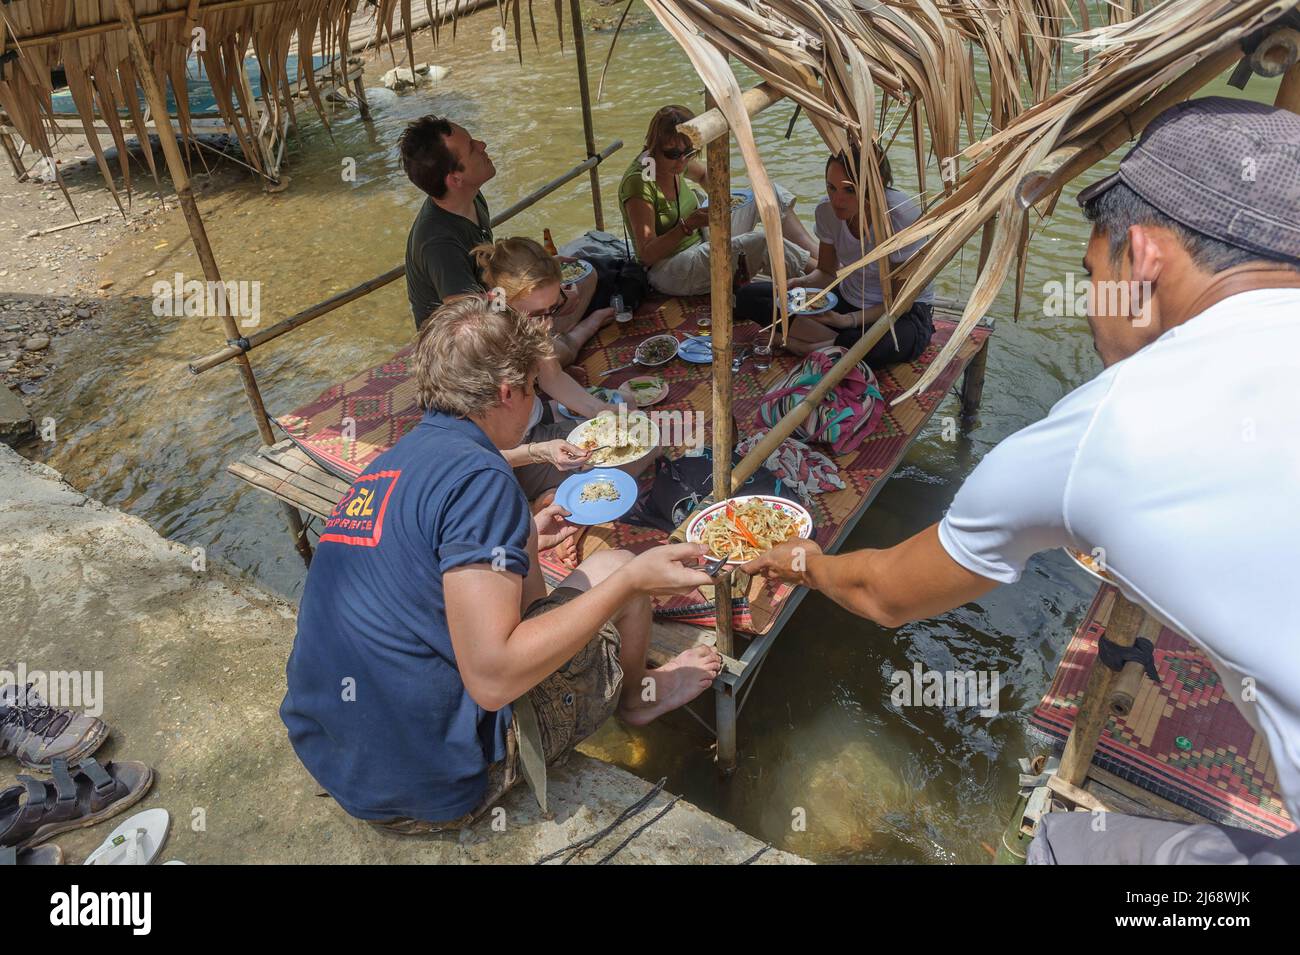 Los turistas disfrutan de un almuerzo tradicional en una cabaña restaurante junto al río, Nong Lu, distrito de sangkhla buri, Tailandia Foto de stock